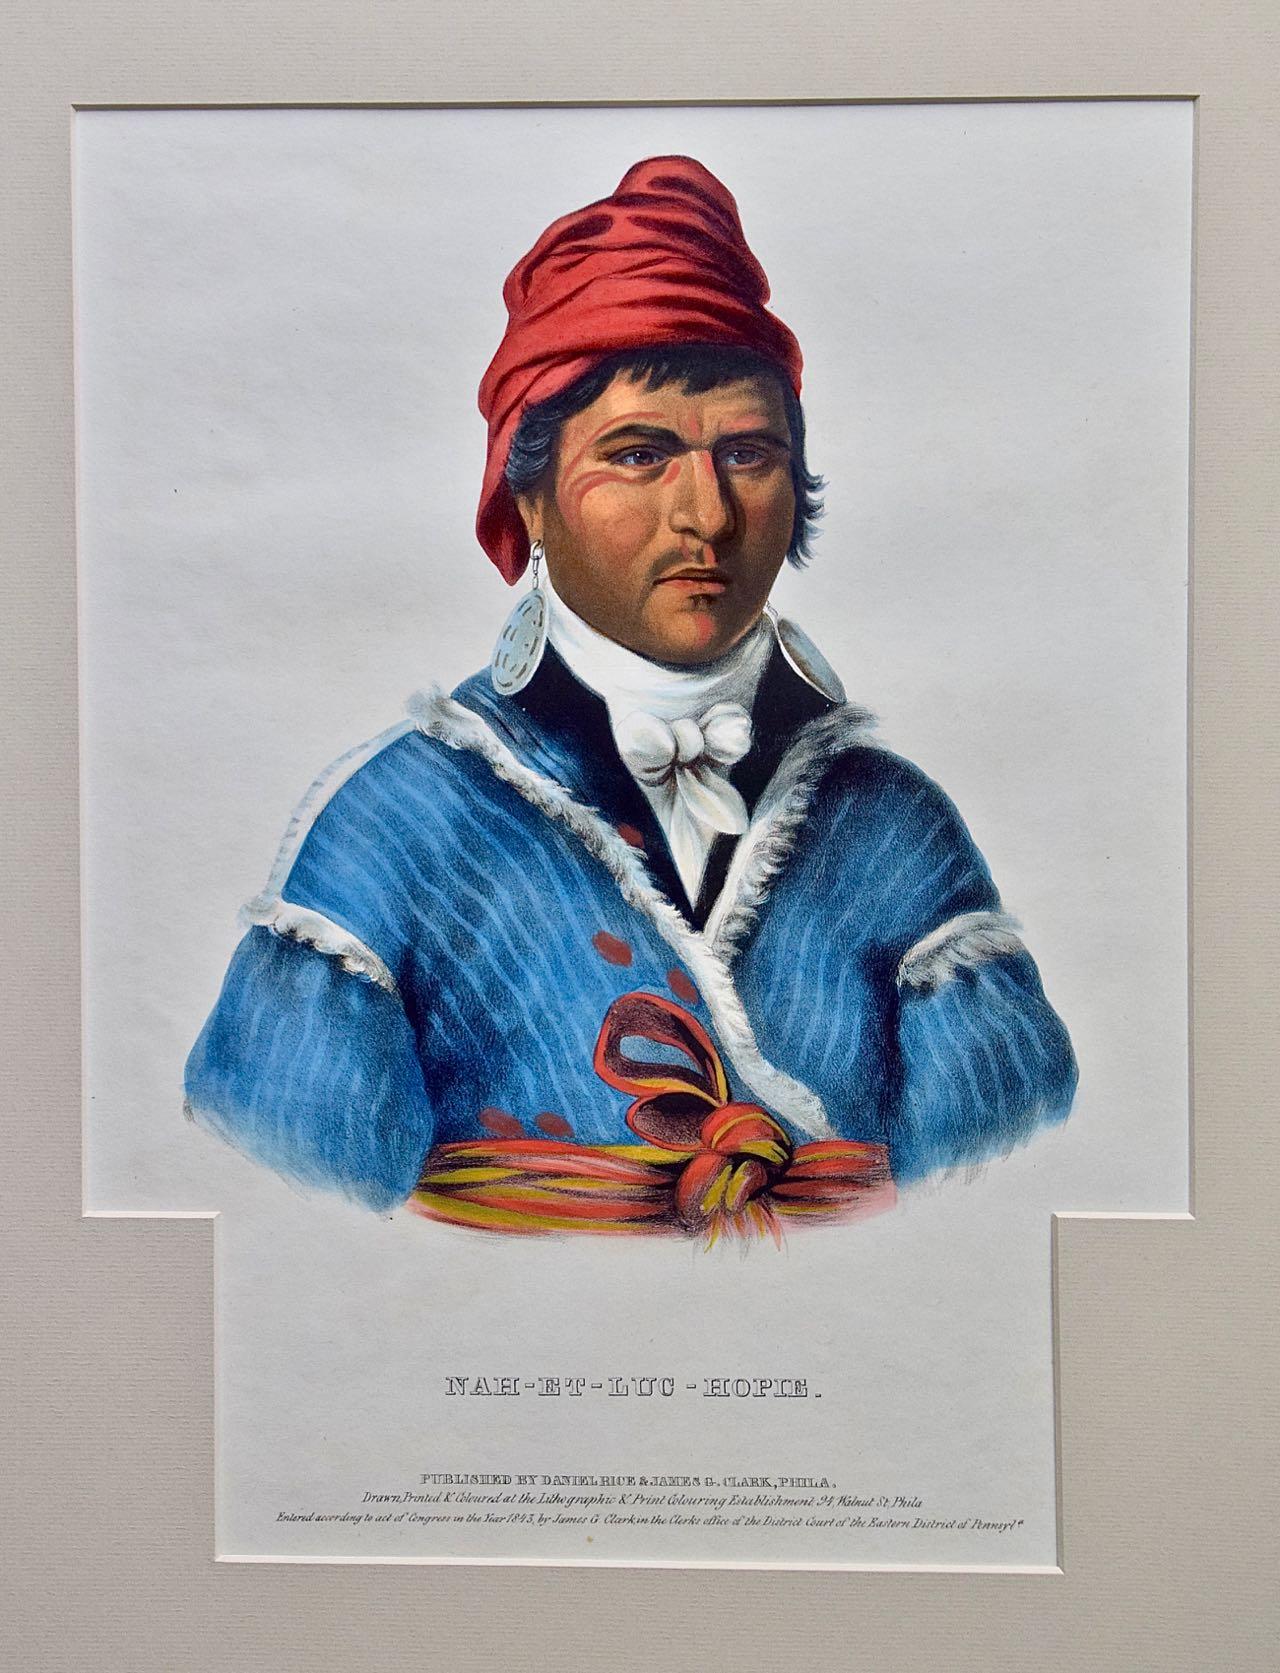 Lithographie originale de McKenney et Hall du XIXe siècle, coloriée à la main et de format folio, représentant un Amérindien intitulé "Nah-Et-Luc-Hopie", créée par Lehman et Duval d'après une peinture de Charles Bird King, tirée de l'"Histoire des